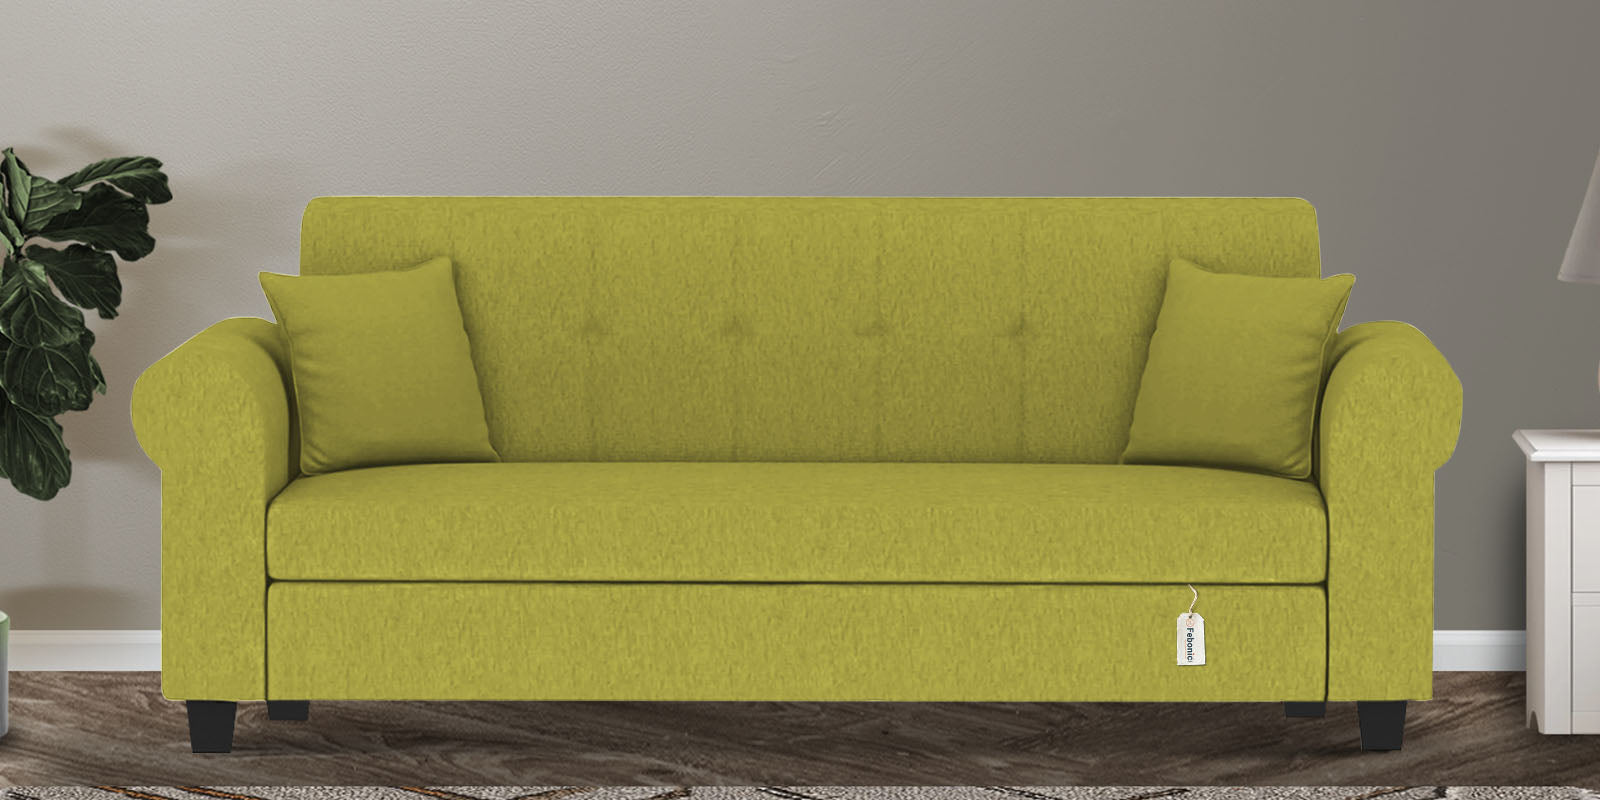 Derado Fabric 3 Seater Sofa in Parrot Green Colour